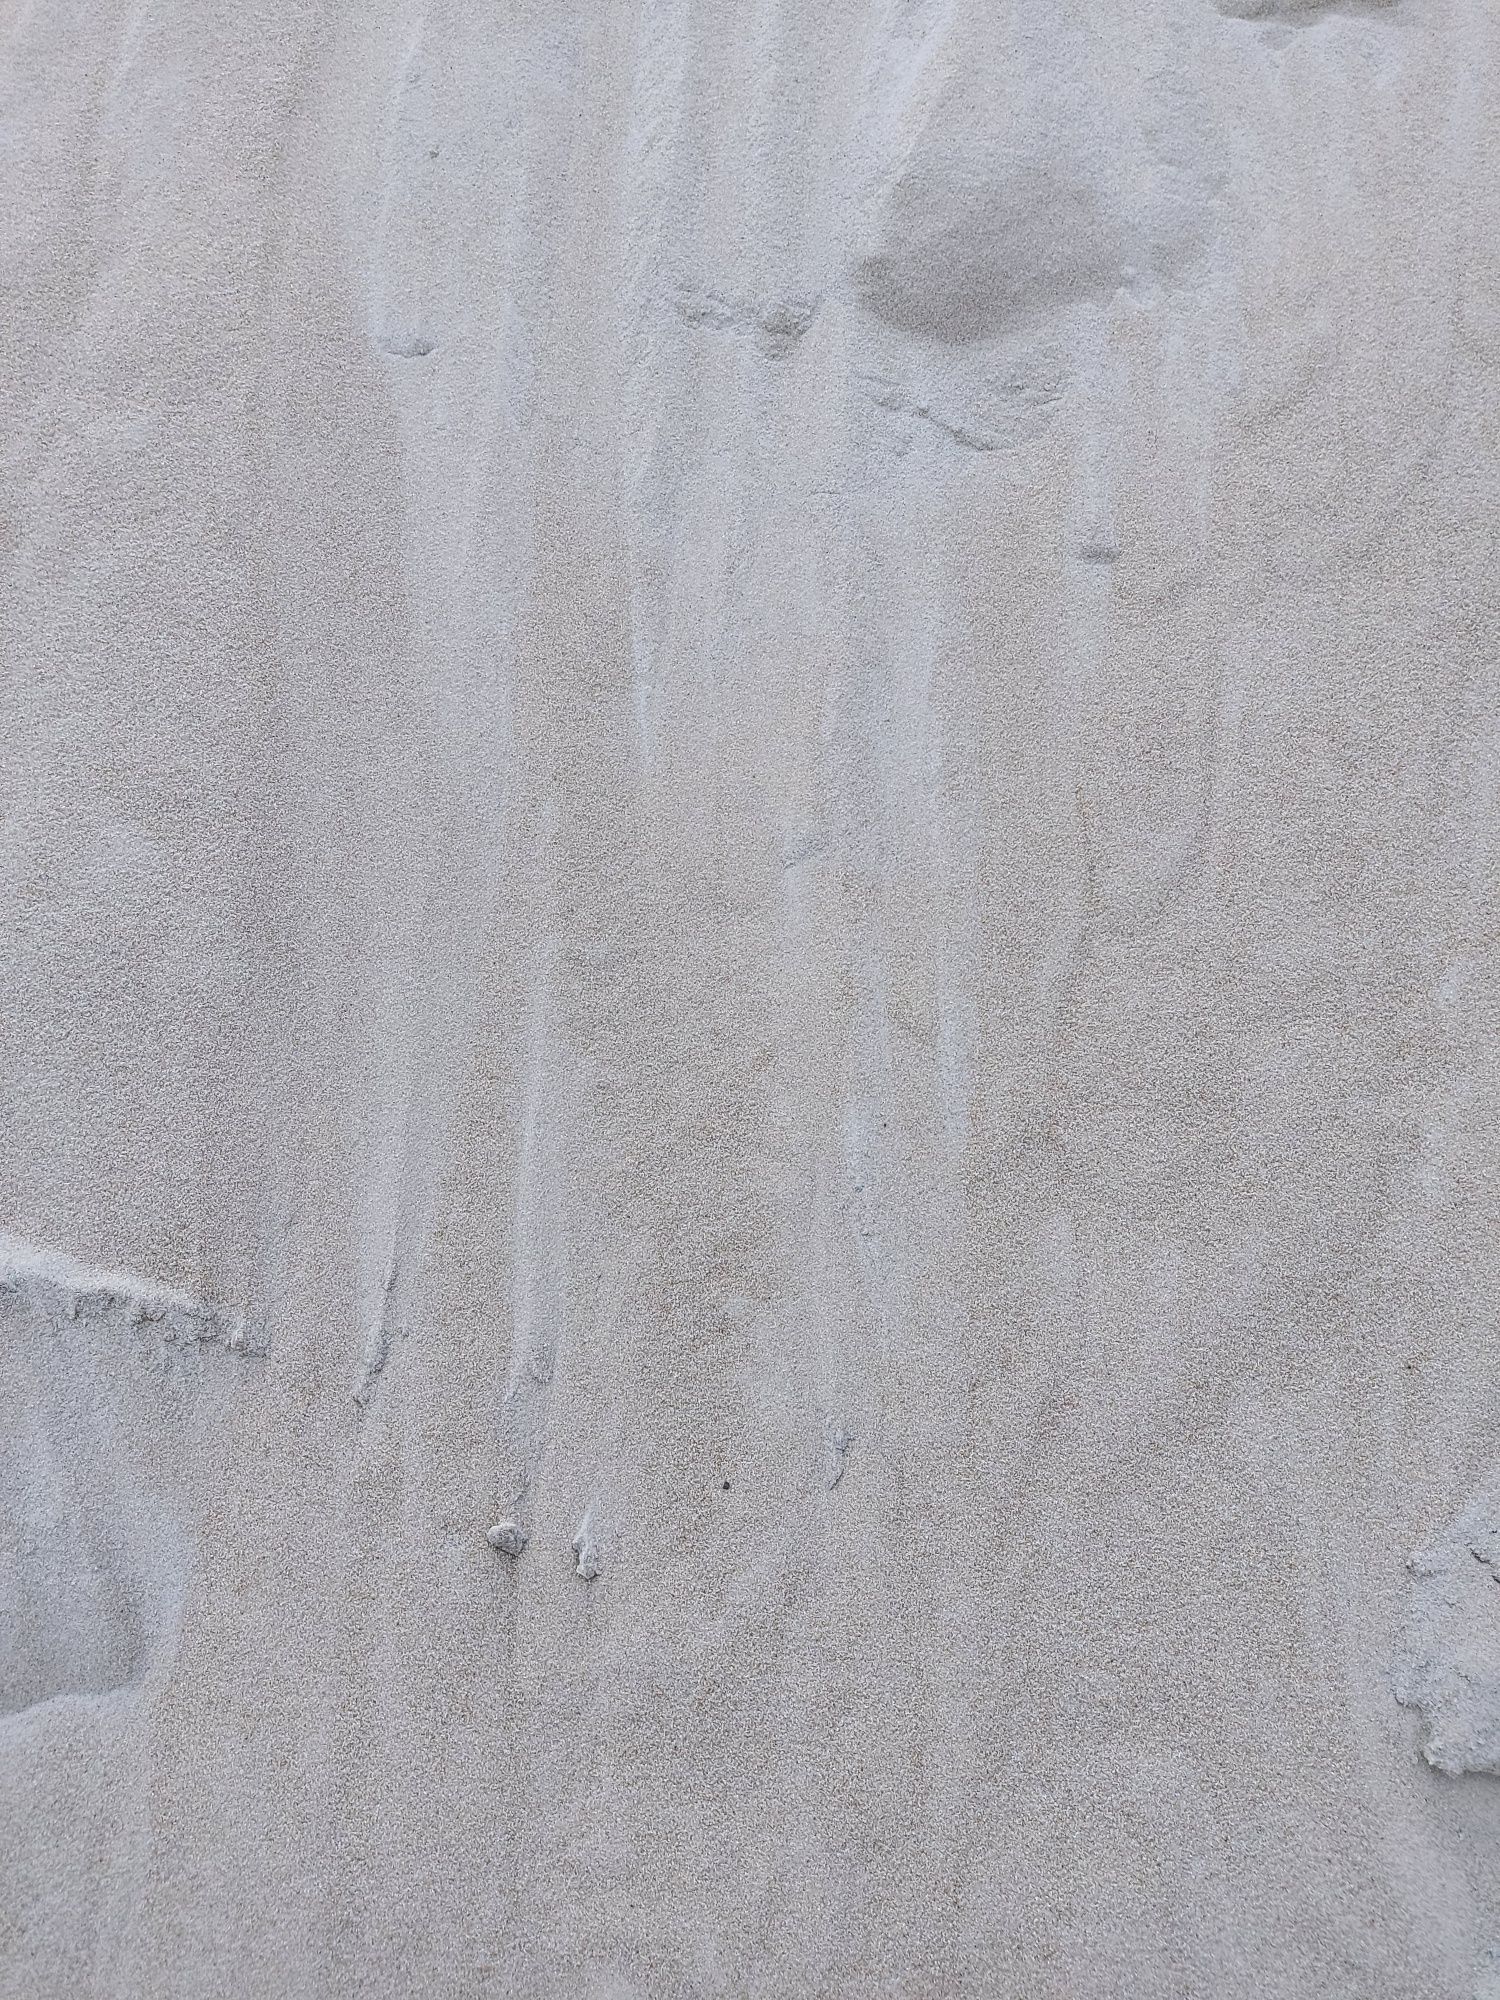 Piasek Piach Kwarcowy 0.2 - 0.4 mm Biały piach  Zasypka do kostki